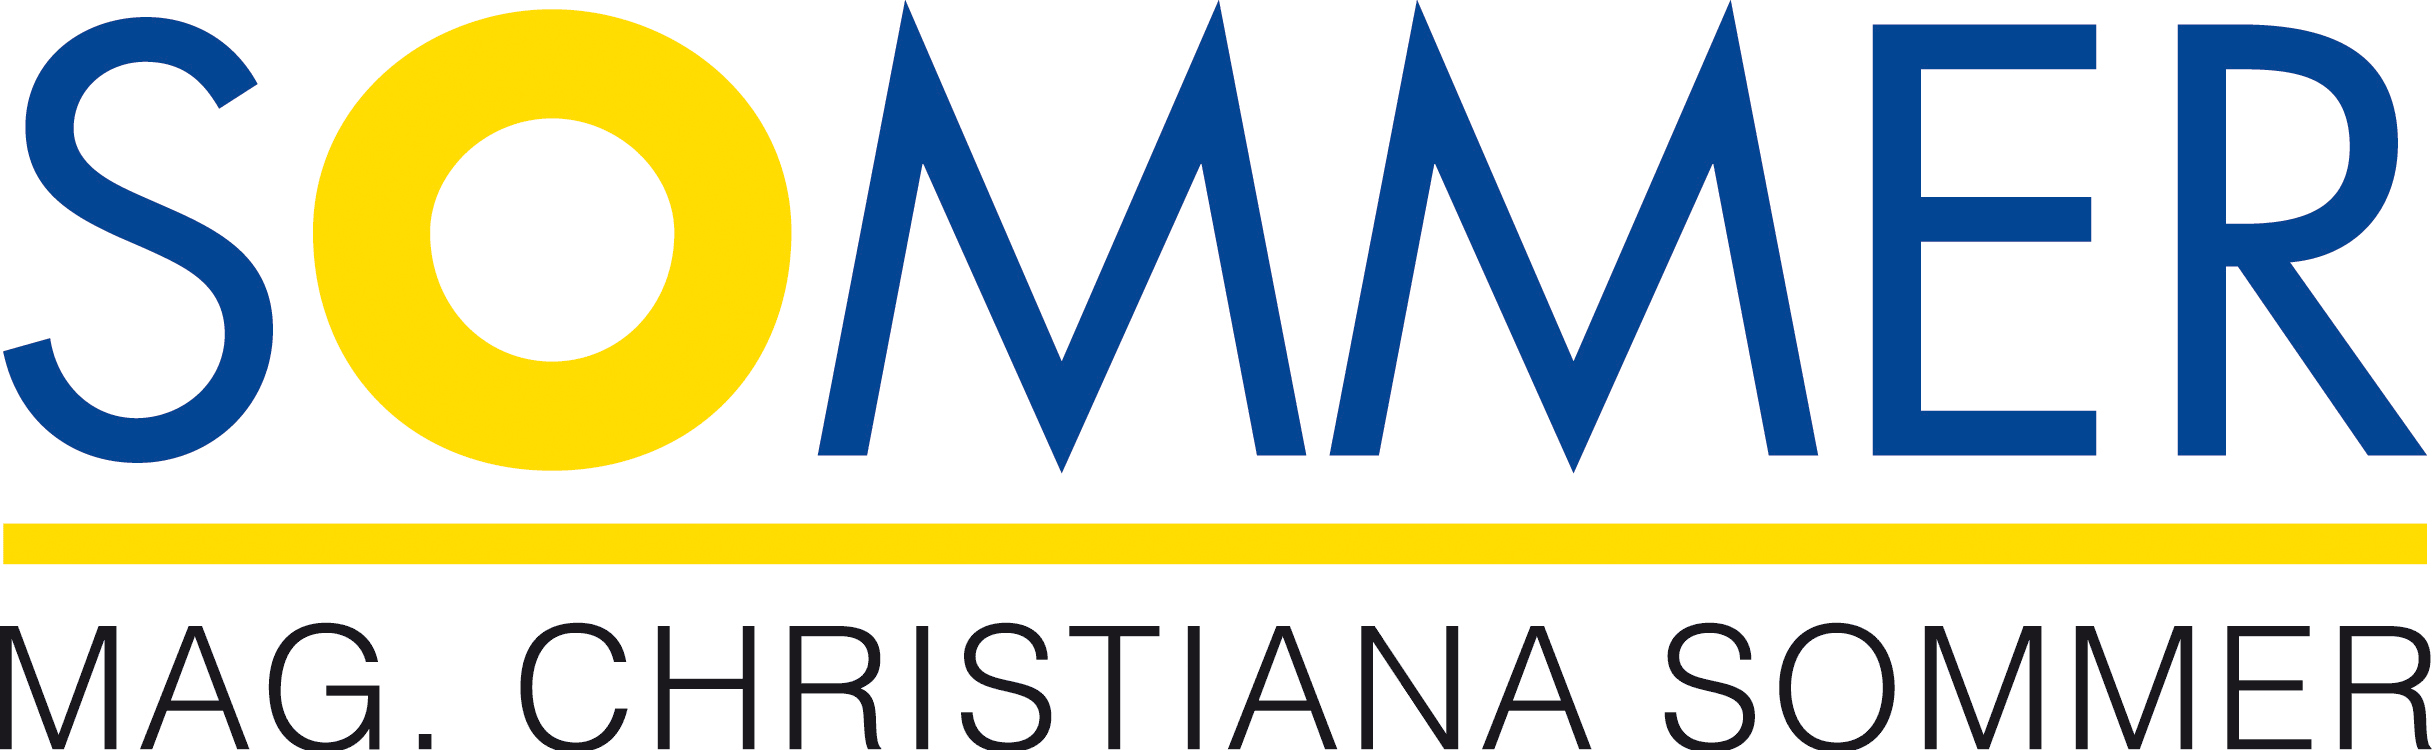 Logo: Mag. Christiana Sommer; Steuerberaterin & Wirtschaftstreuhänderin, Unternehmensberatung, Steuerkanzlei Bad Hall